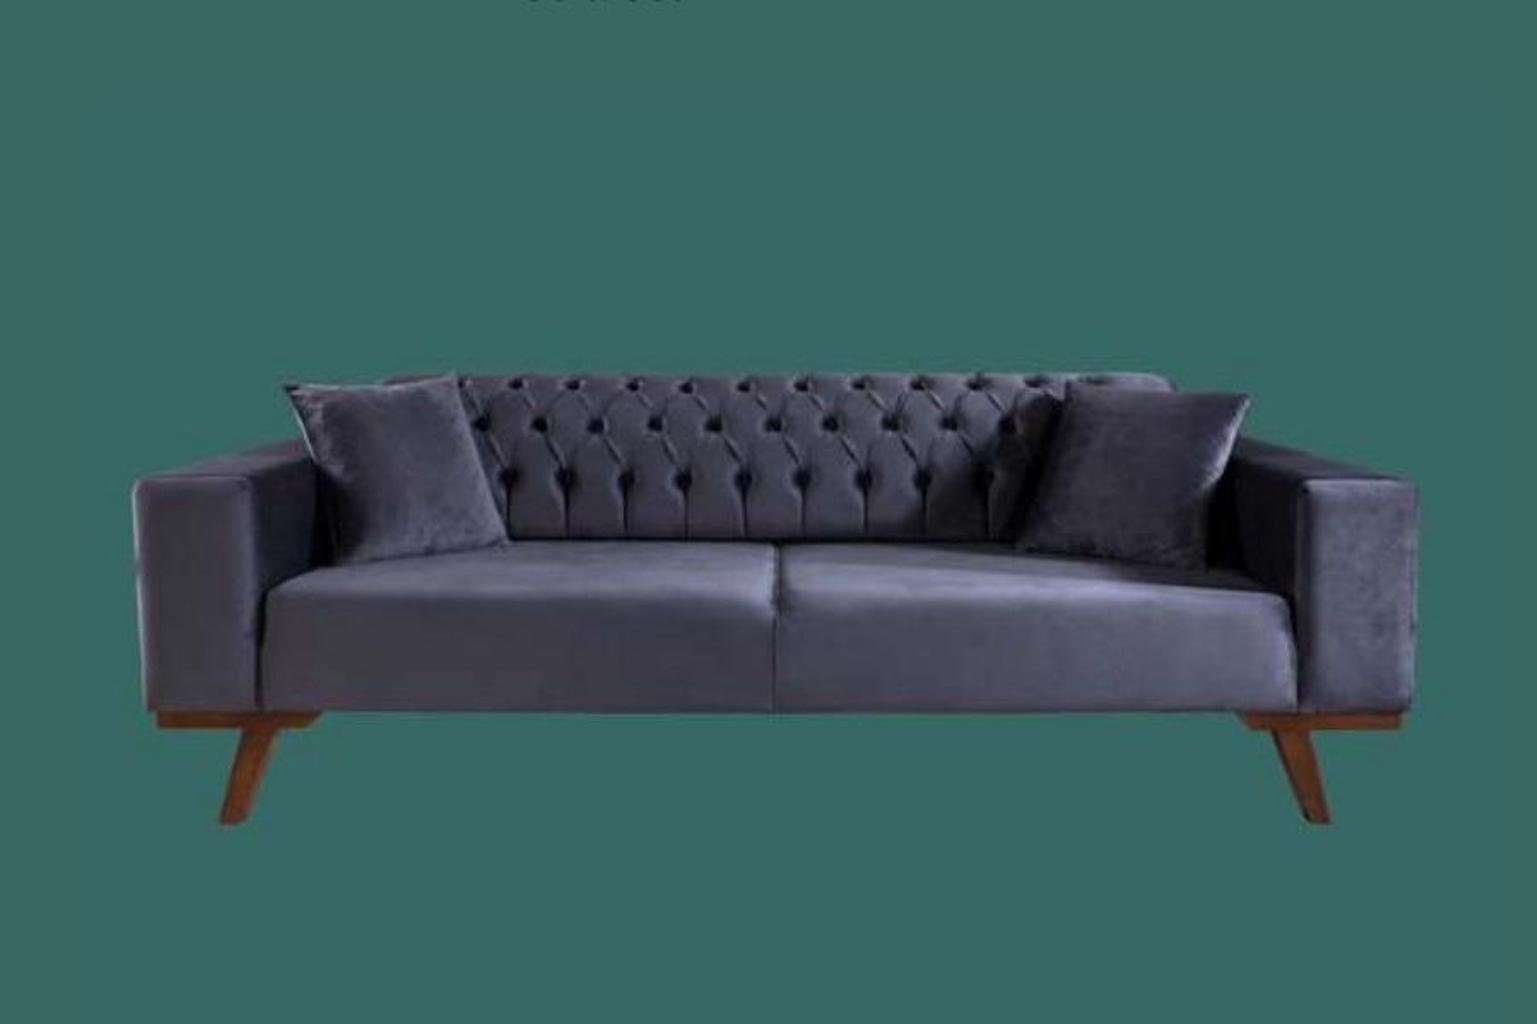 JVmoebel Sofa Design Dreisitzer Moderne Couch grau Couchen Möbel, Made in Europe